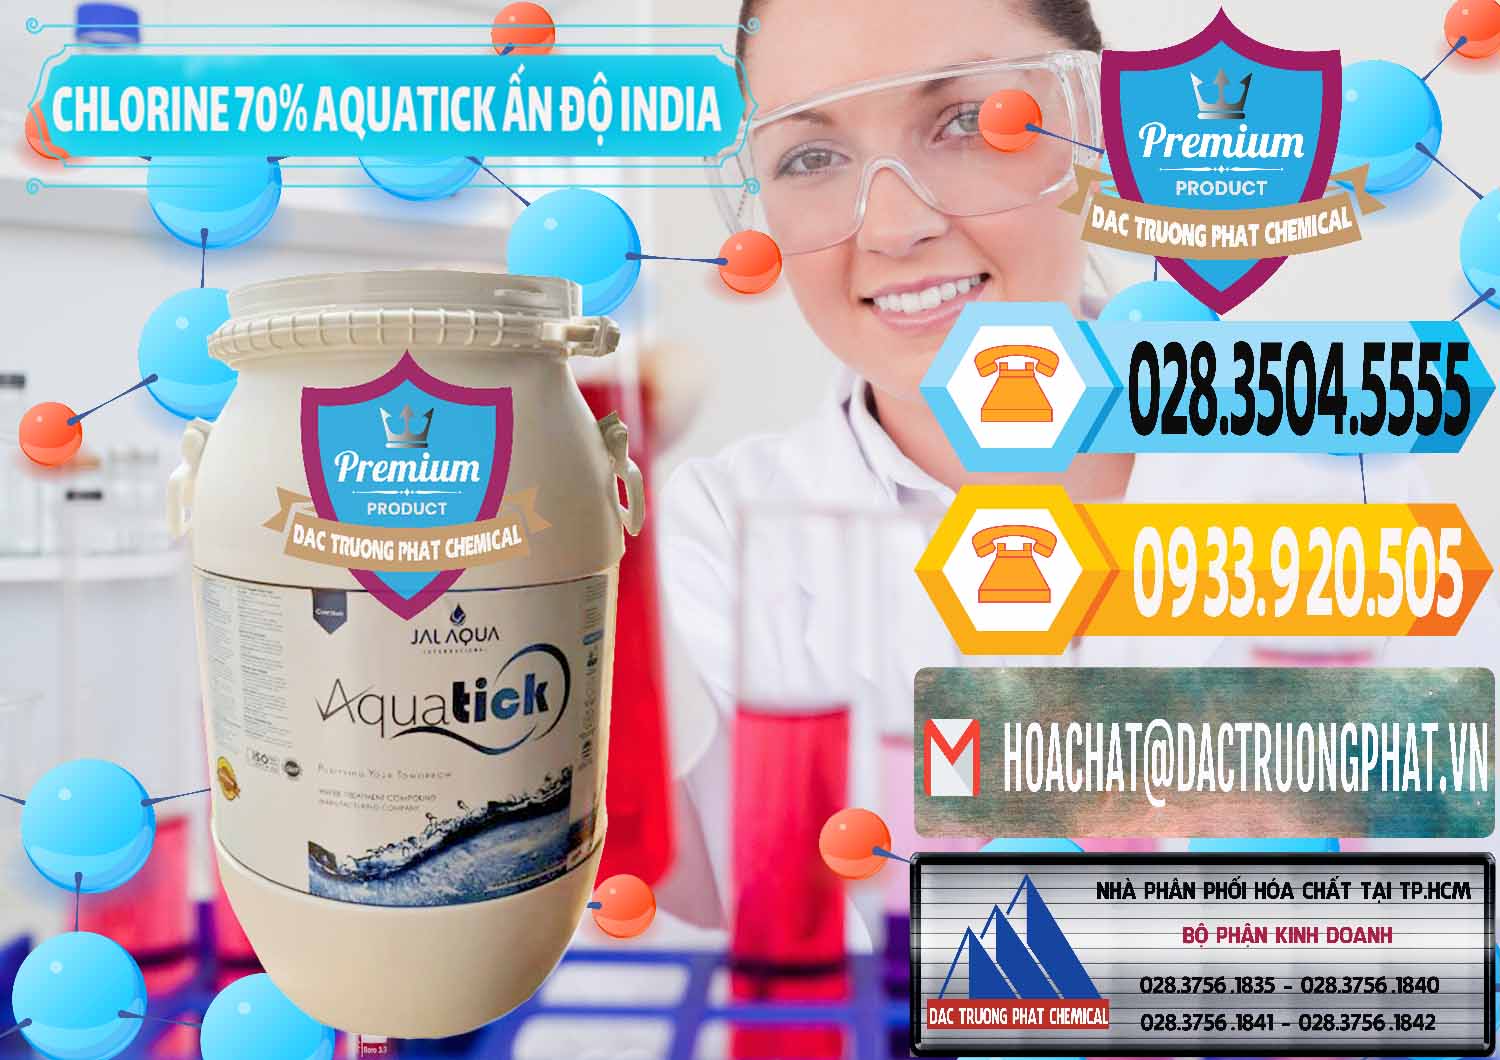 Đơn vị bán ( cung cấp ) Chlorine – Clorin 70% Aquatick Jal Aqua Ấn Độ India - 0215 - Cty chuyên nhập khẩu - cung cấp hóa chất tại TP.HCM - hoachattayrua.net